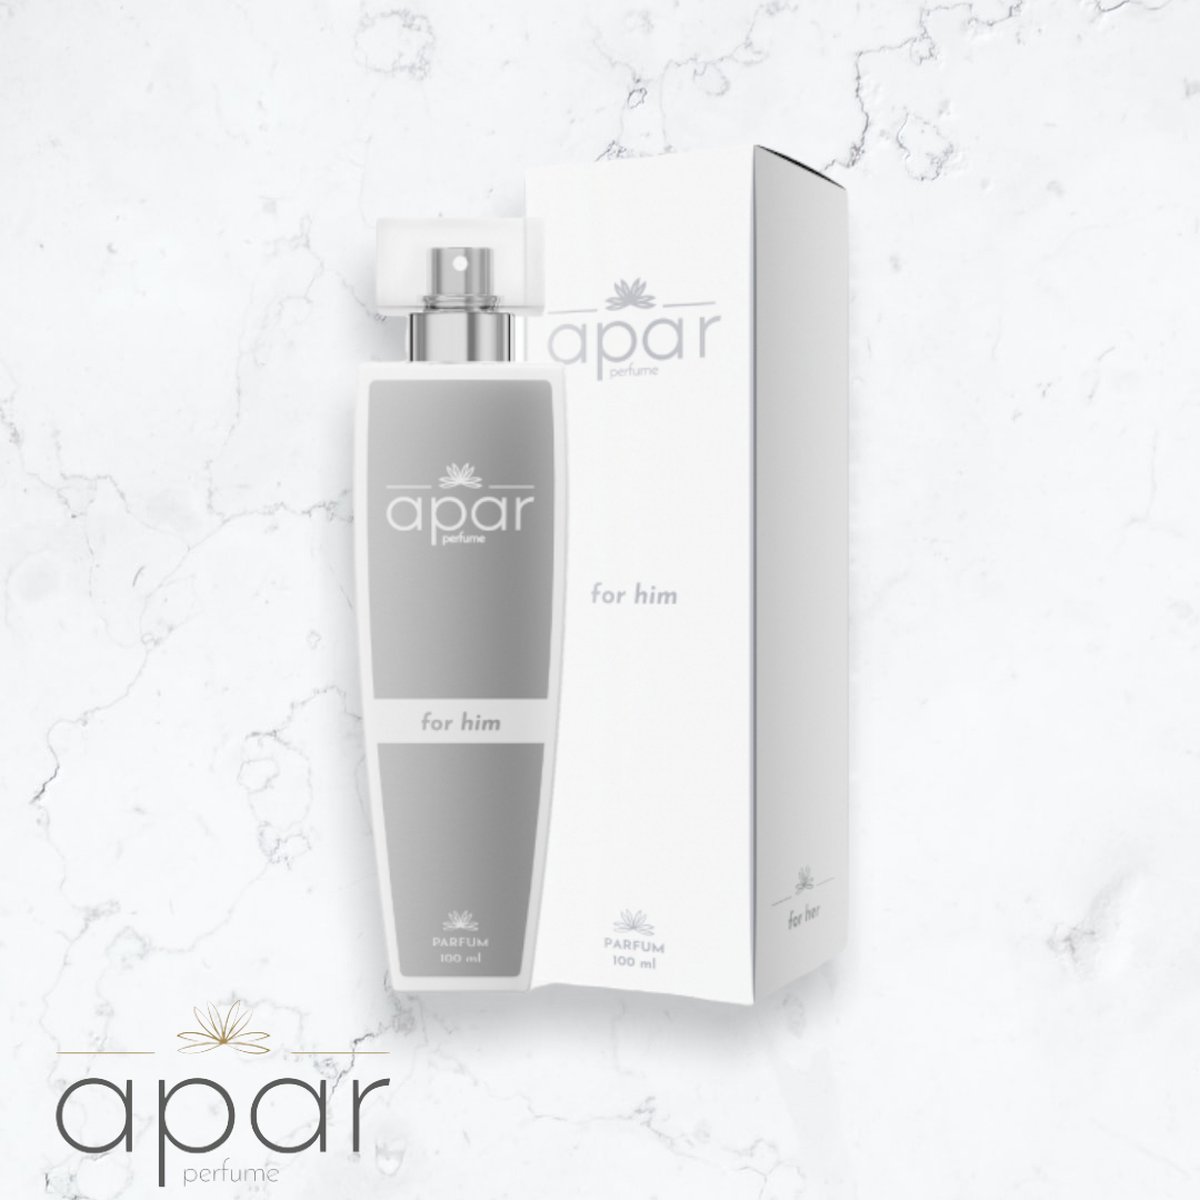 ❤Dure merk geuren voor een eerlijke prijs❤APAR Parfum EDP - 50ml - Nummer H803 Premium -